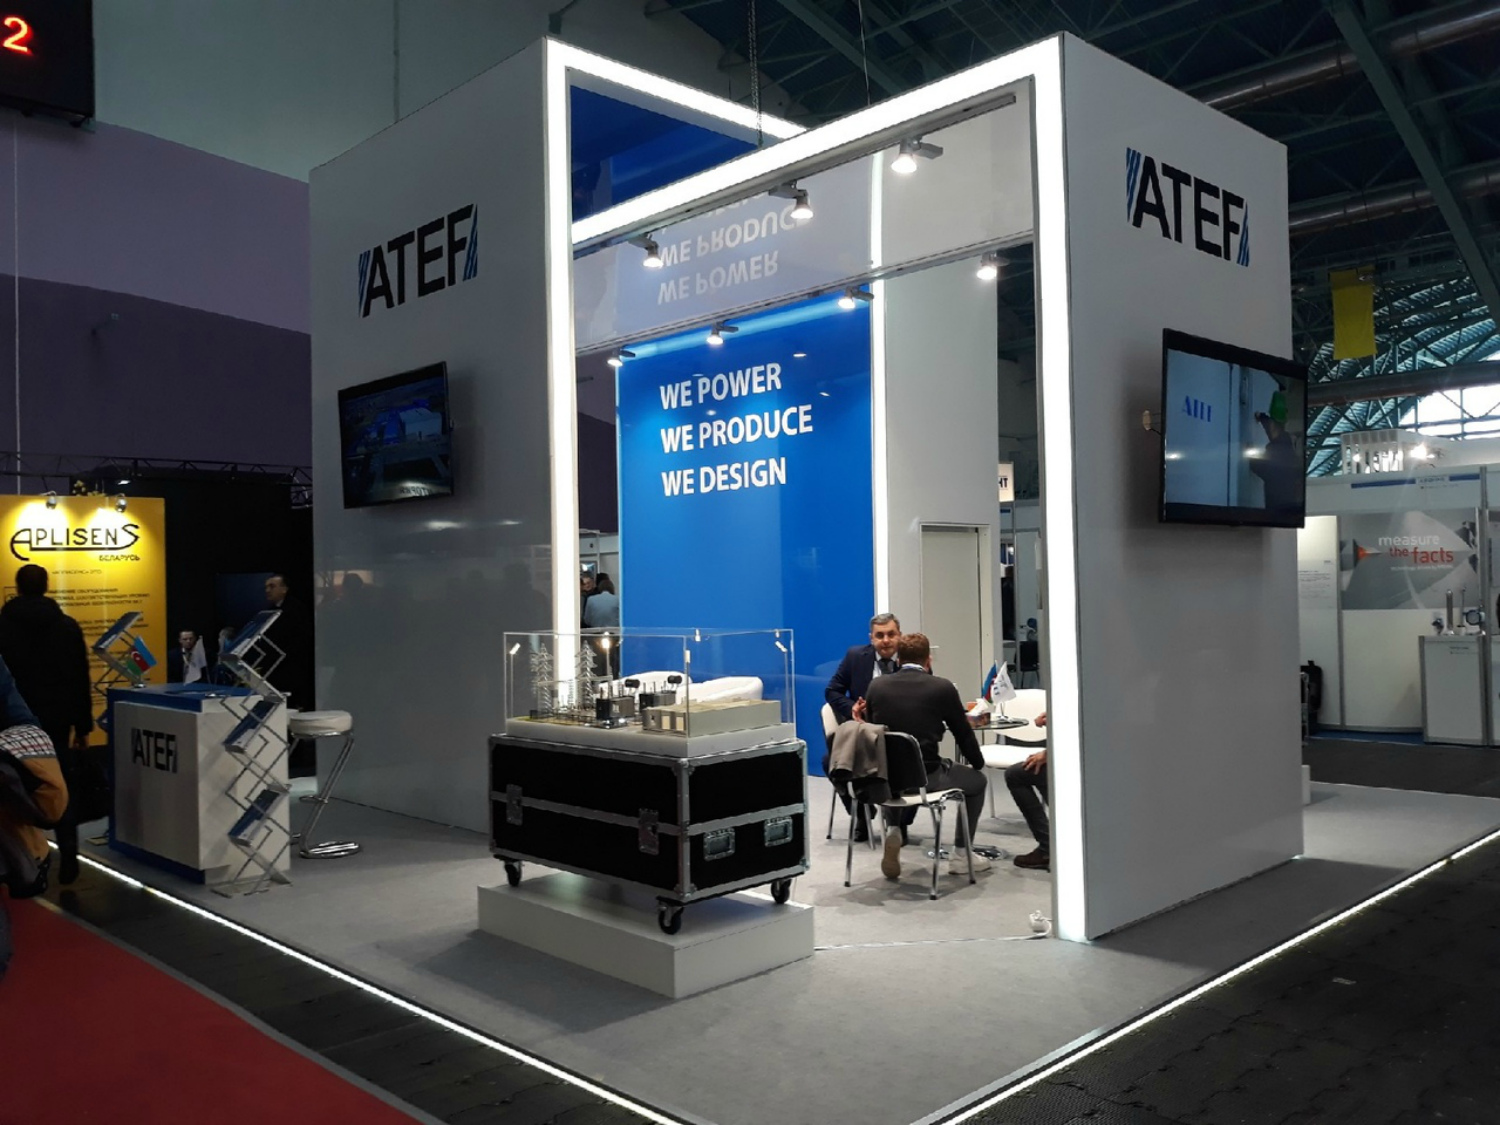 Группа компаний ATEF специализируется на производстве высококачественного электрического оборудования на среднее и высокое напряжение и предлагает базовые решения под ключ для промышленного, коммунального, транспортного и энергетического секторов